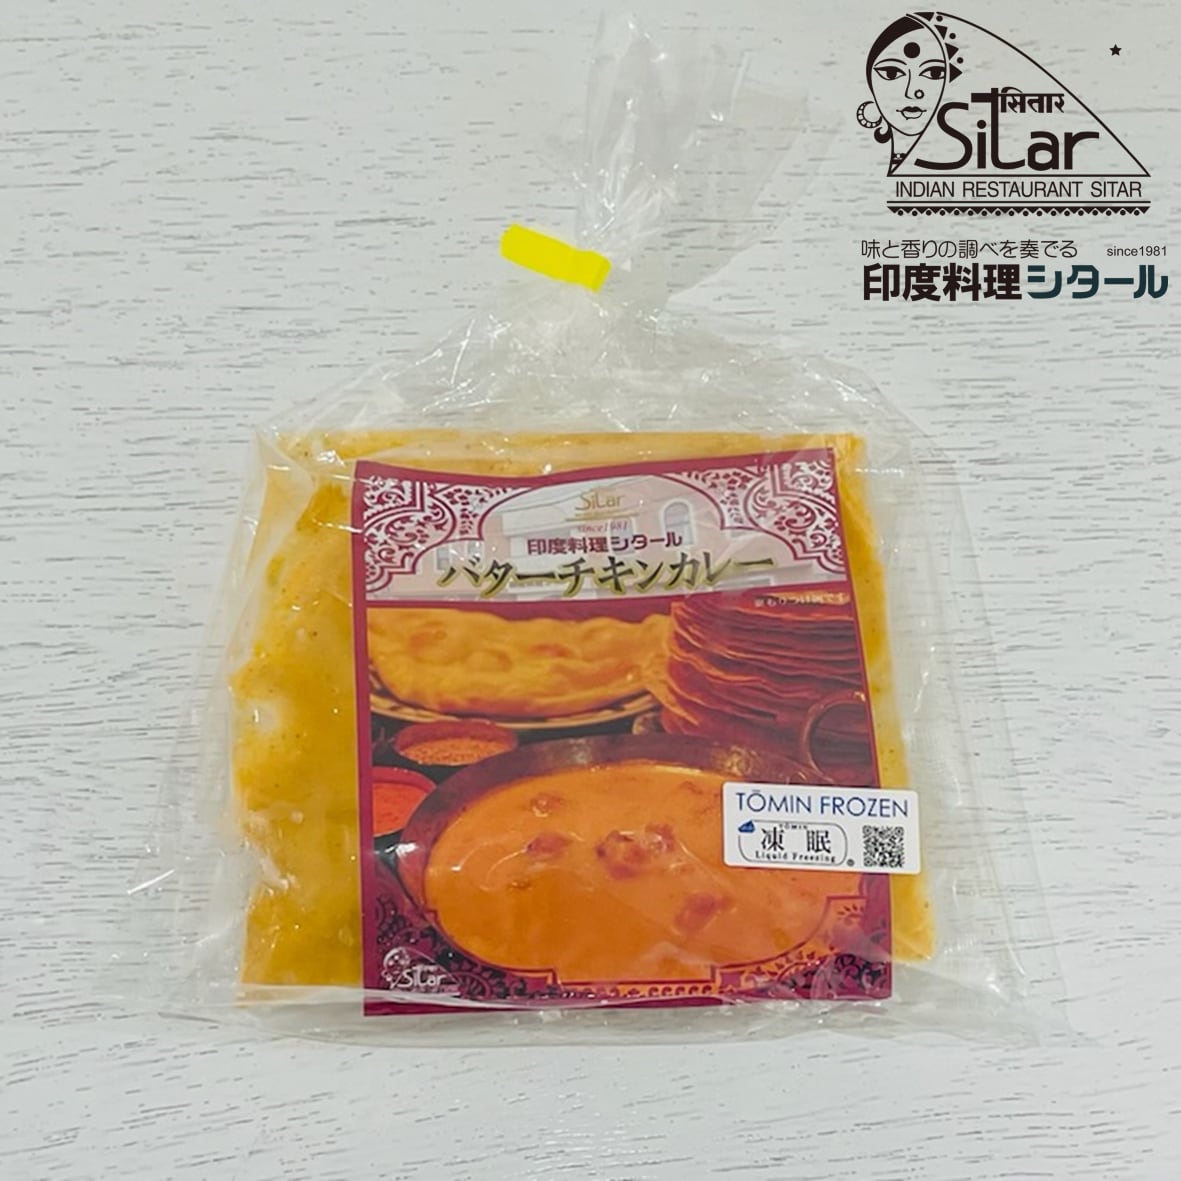 シタール　FROZEN　バターチキンカレー　【冷凍食品セレクトショップ】TŌMIN